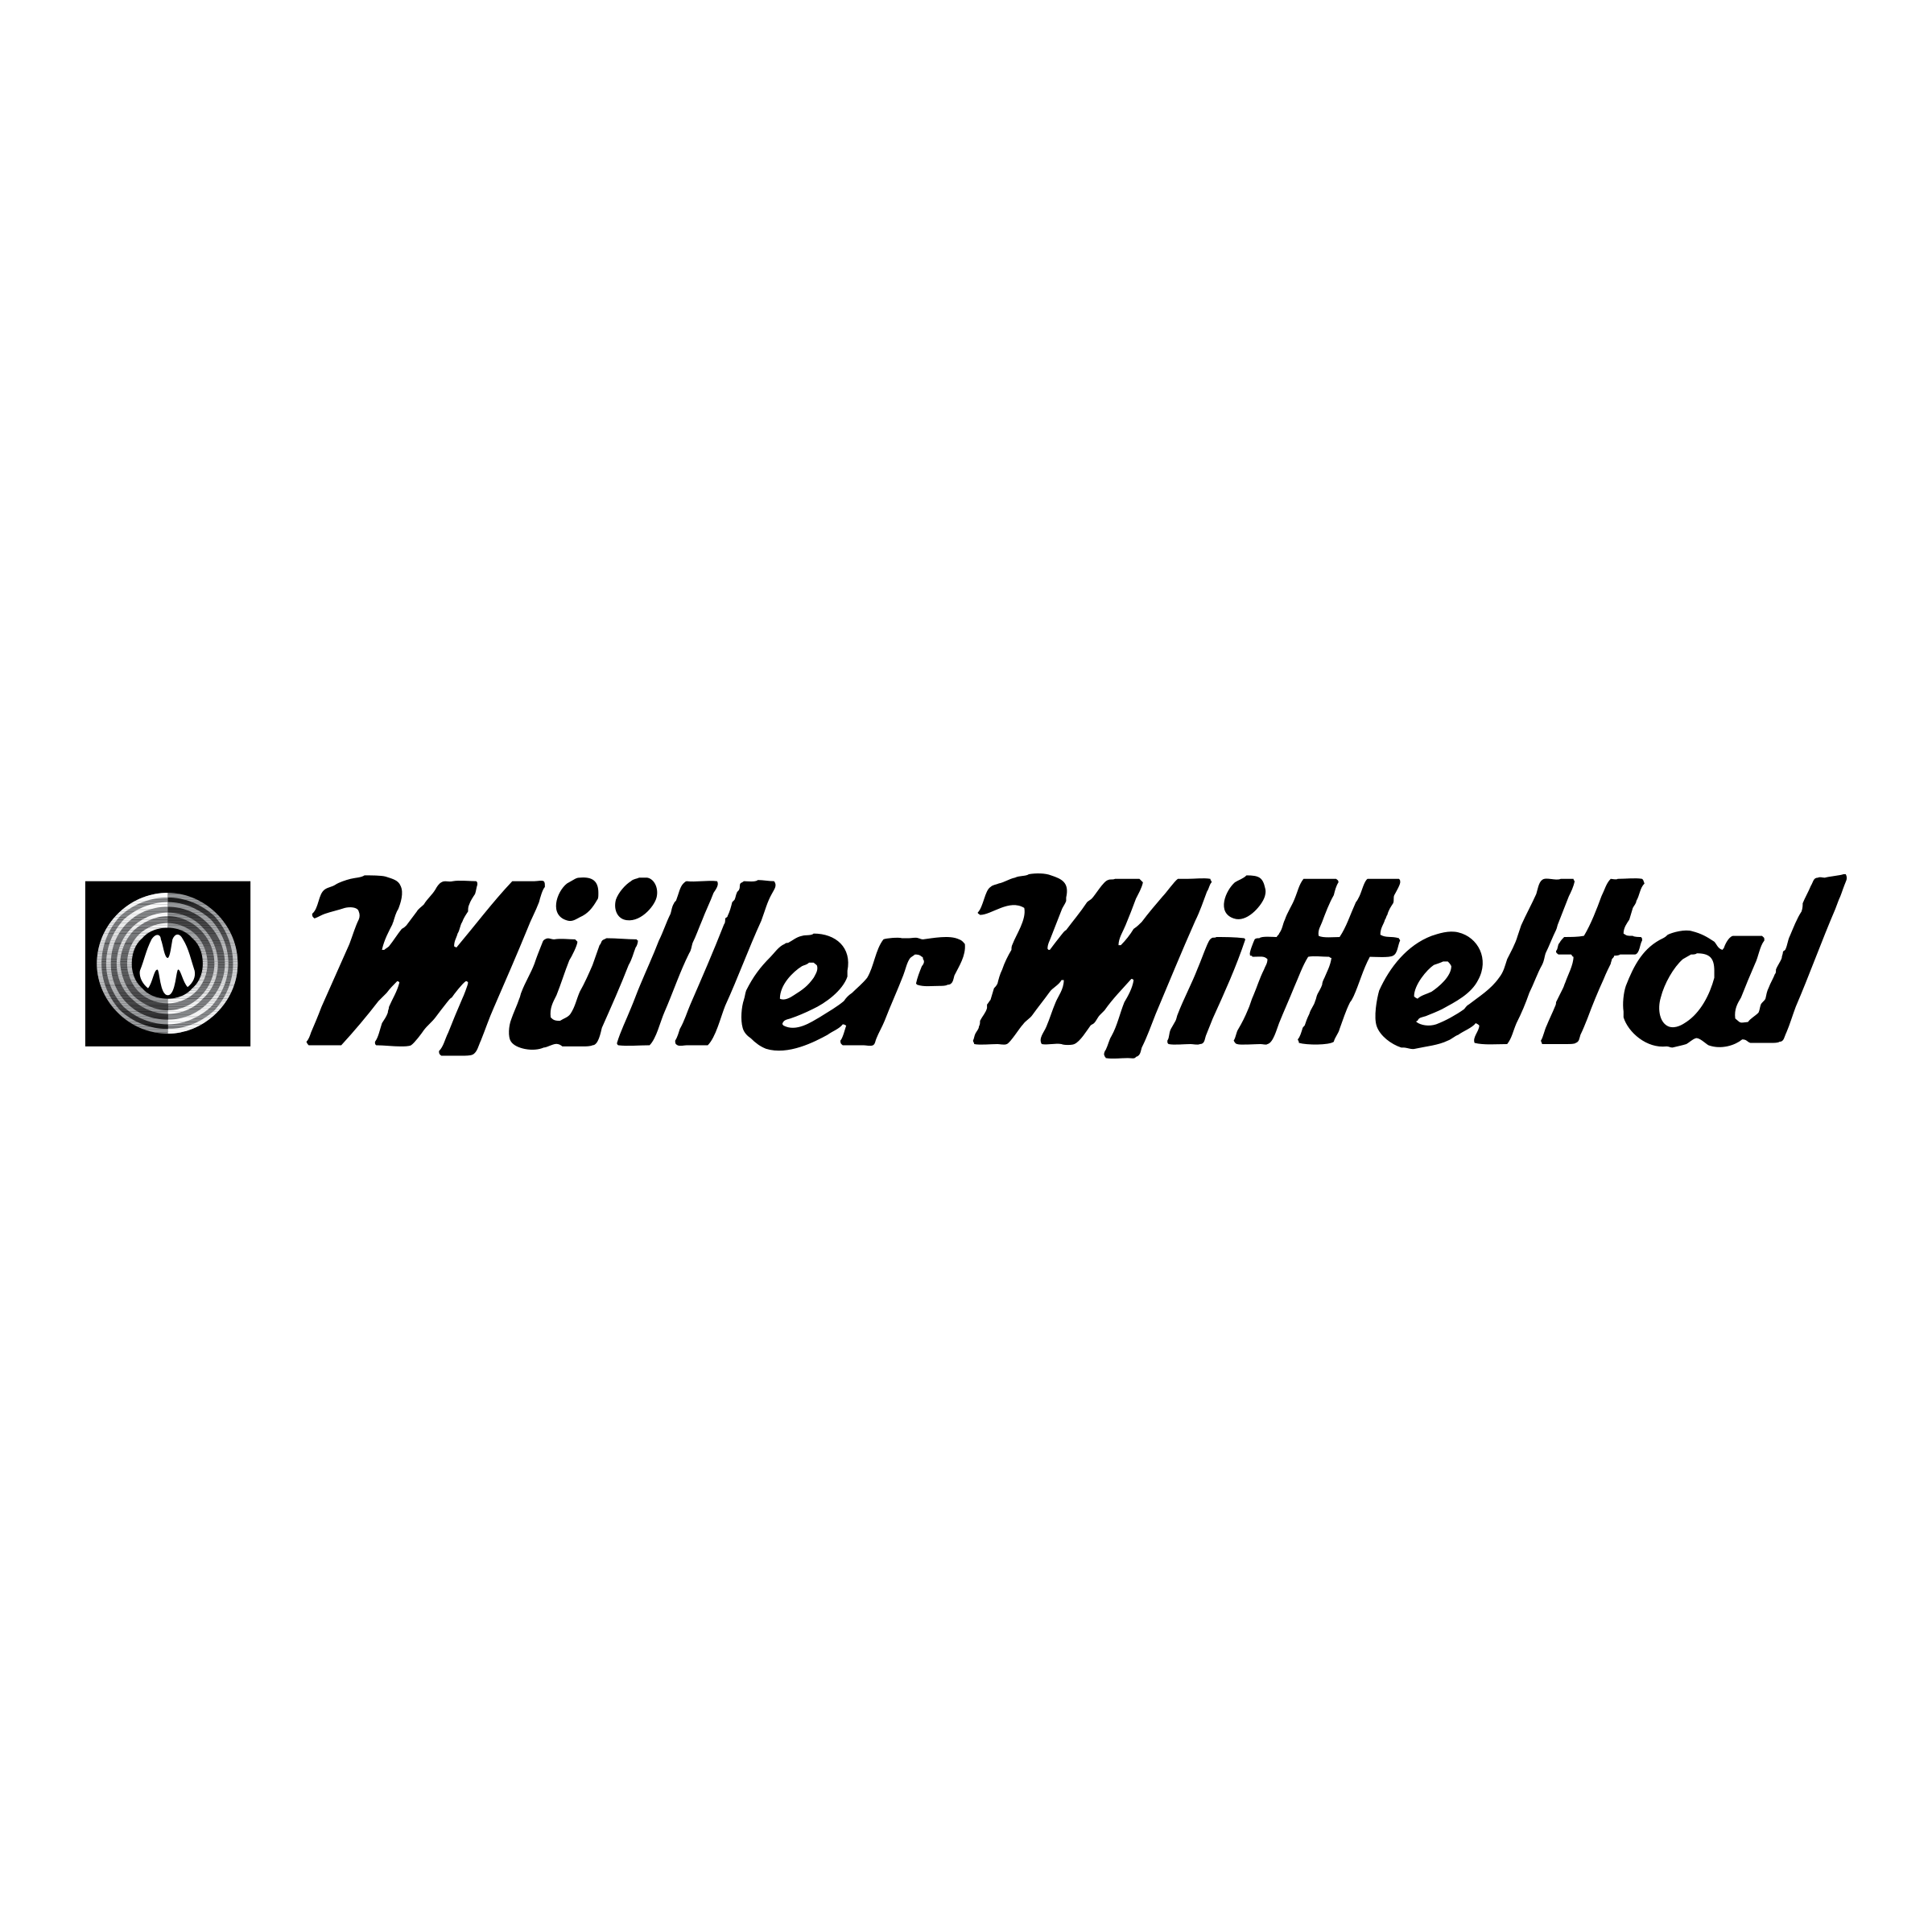 Muller Logo - Muller Mitteltal Logo PNG Transparent & SVG Vector